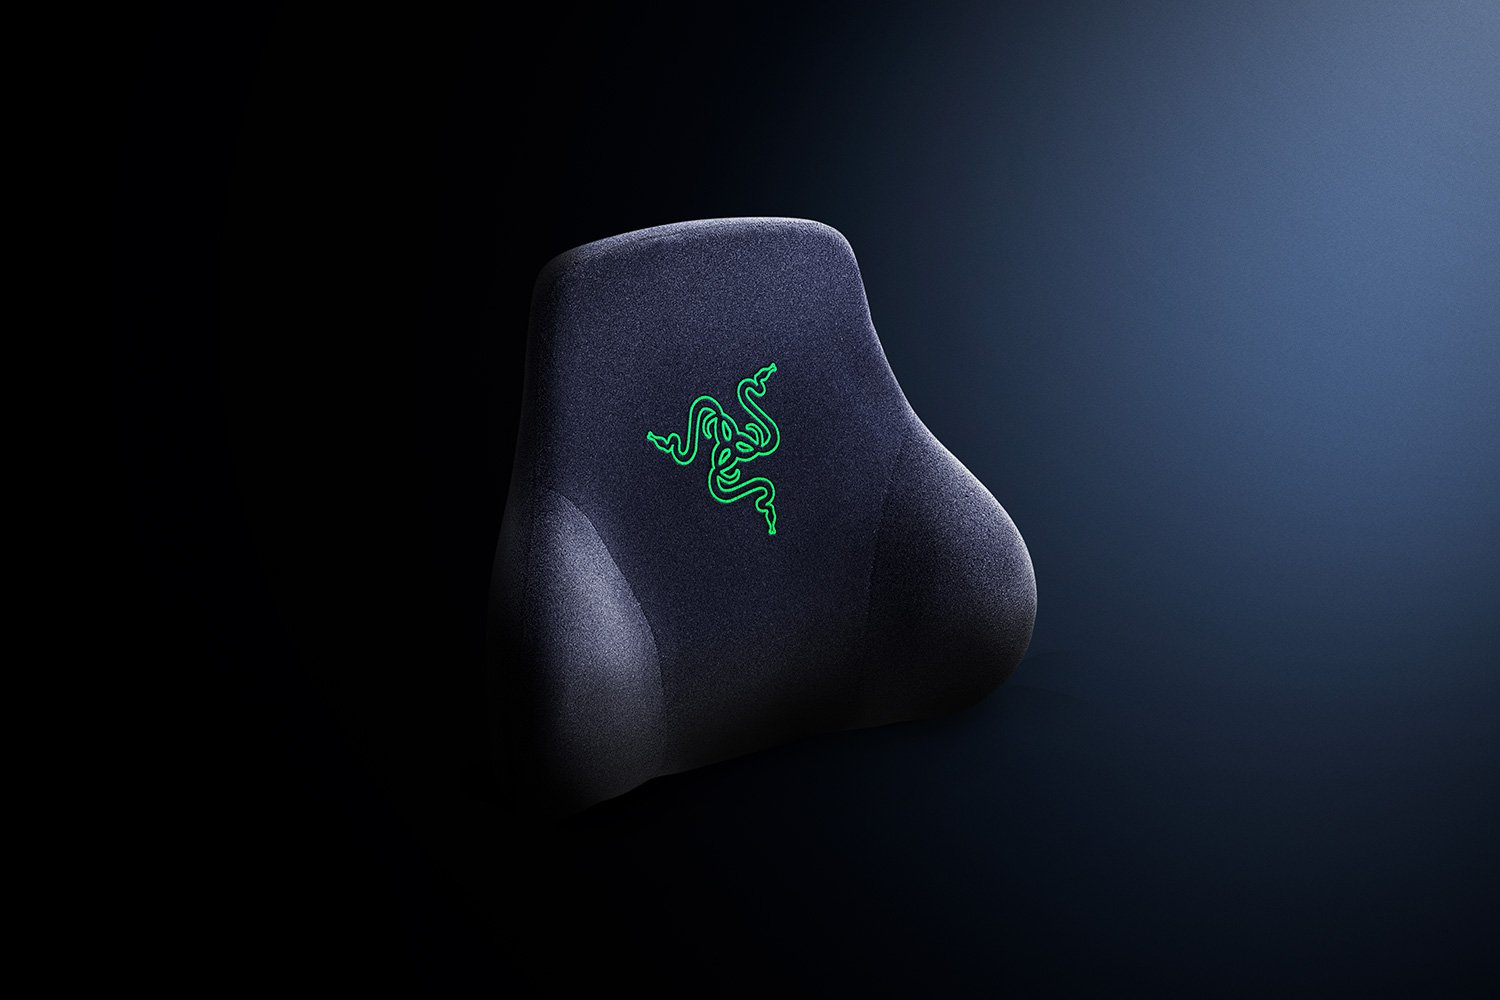 Razer Head Cushion Nacken- & Kopfkissen für Gaming Stühle Black